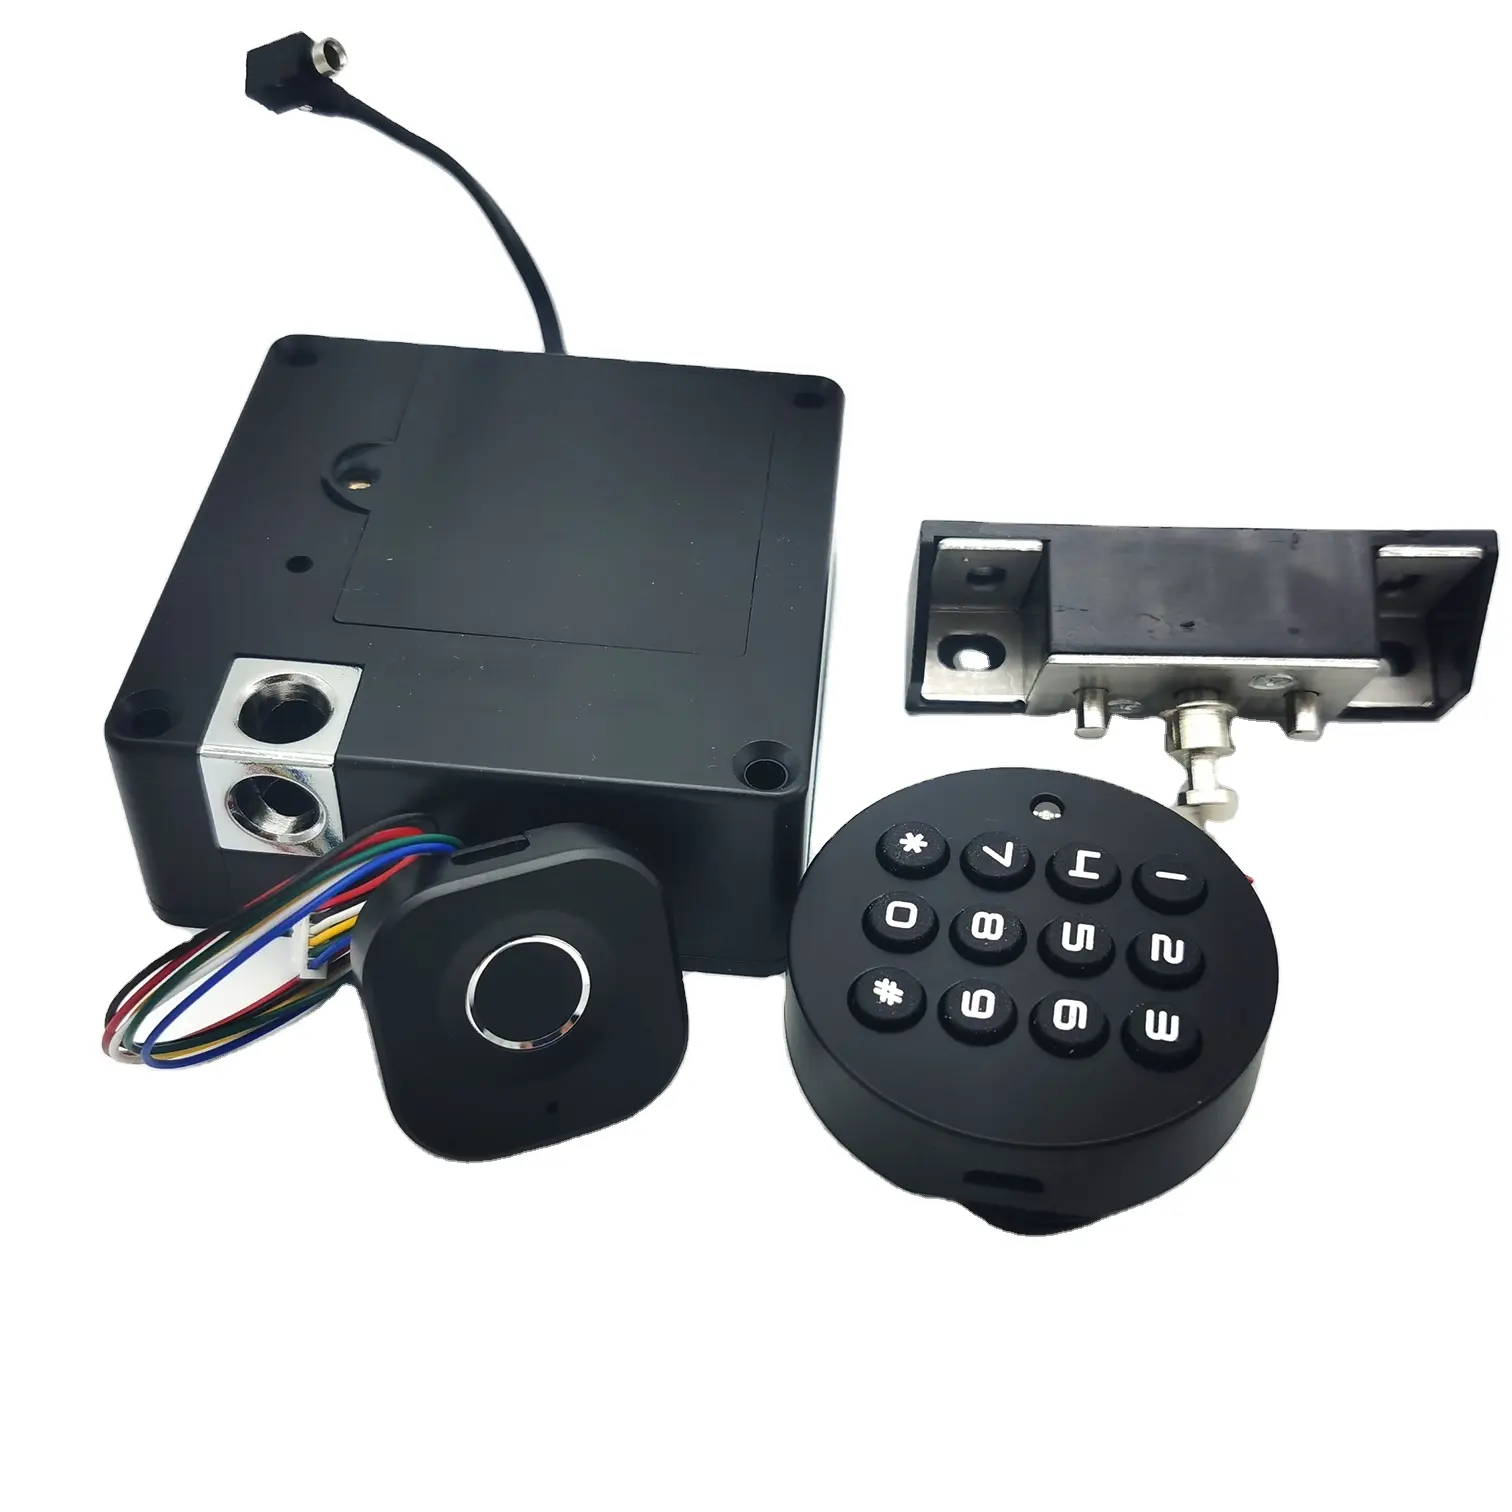 Fabbrica della cina PIN digitale tastiera a codice di impronte digitali serratura intelligente per armadio cassetti